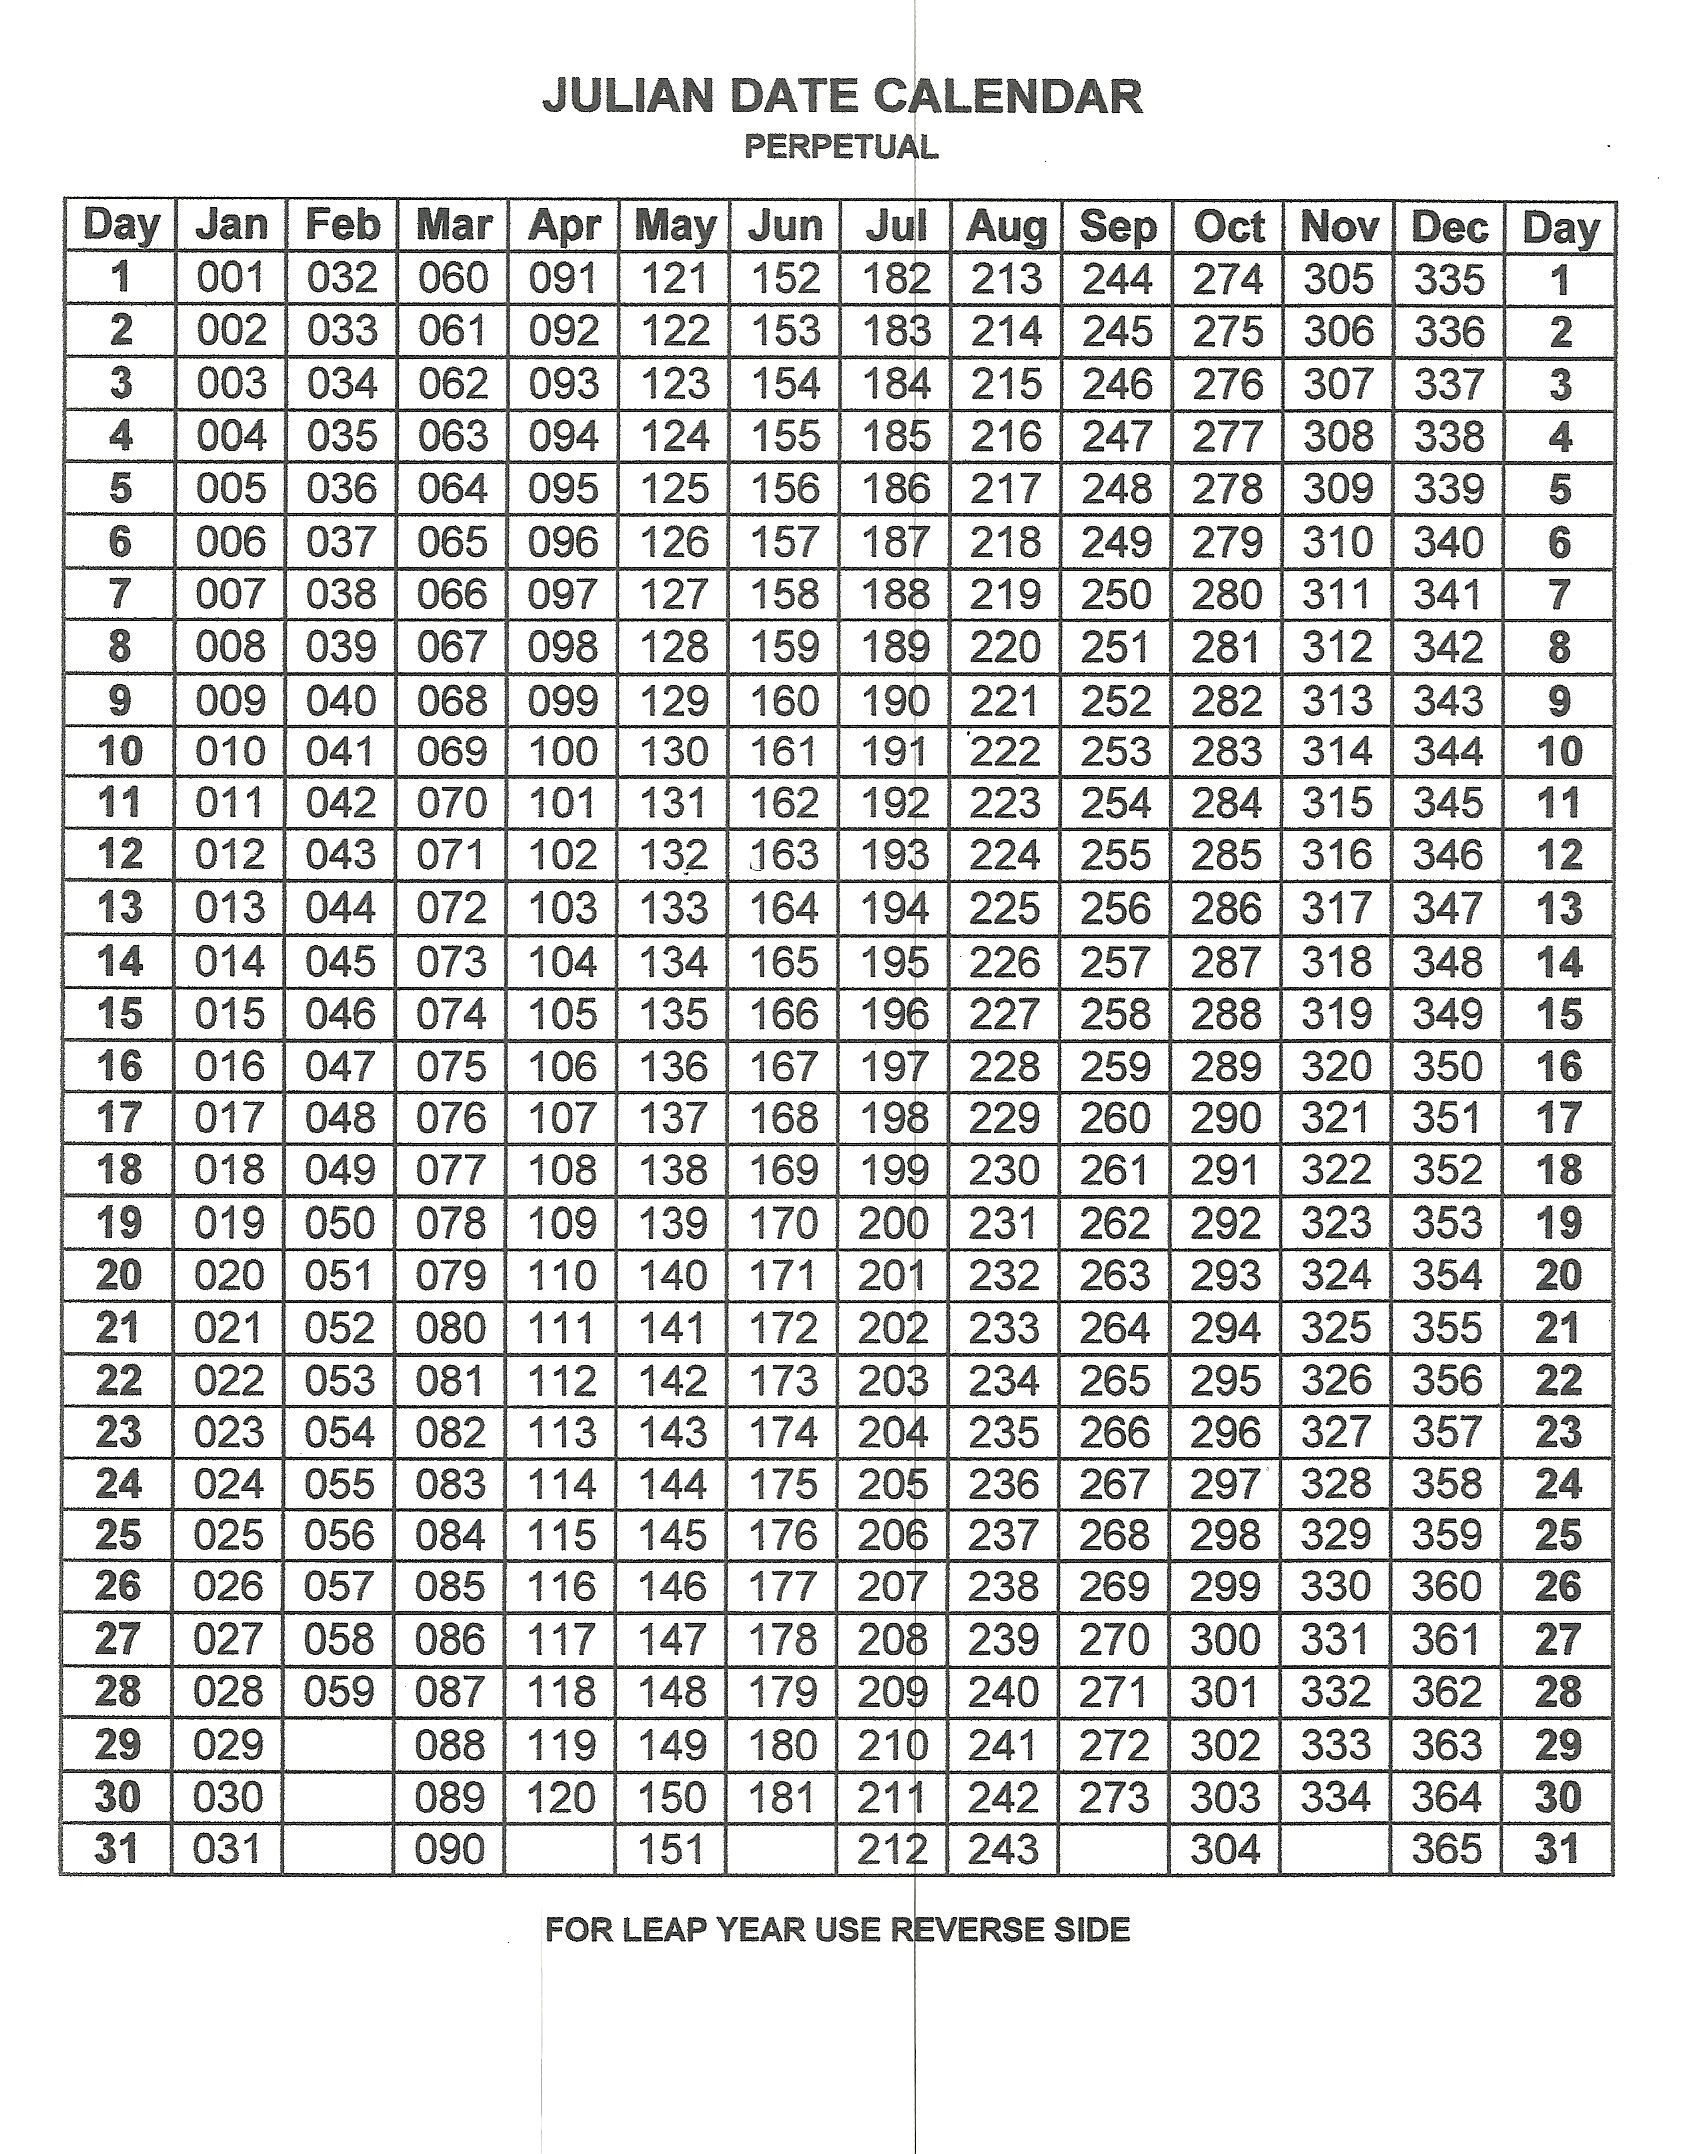 Free Printable Perpetual Julian Calendar